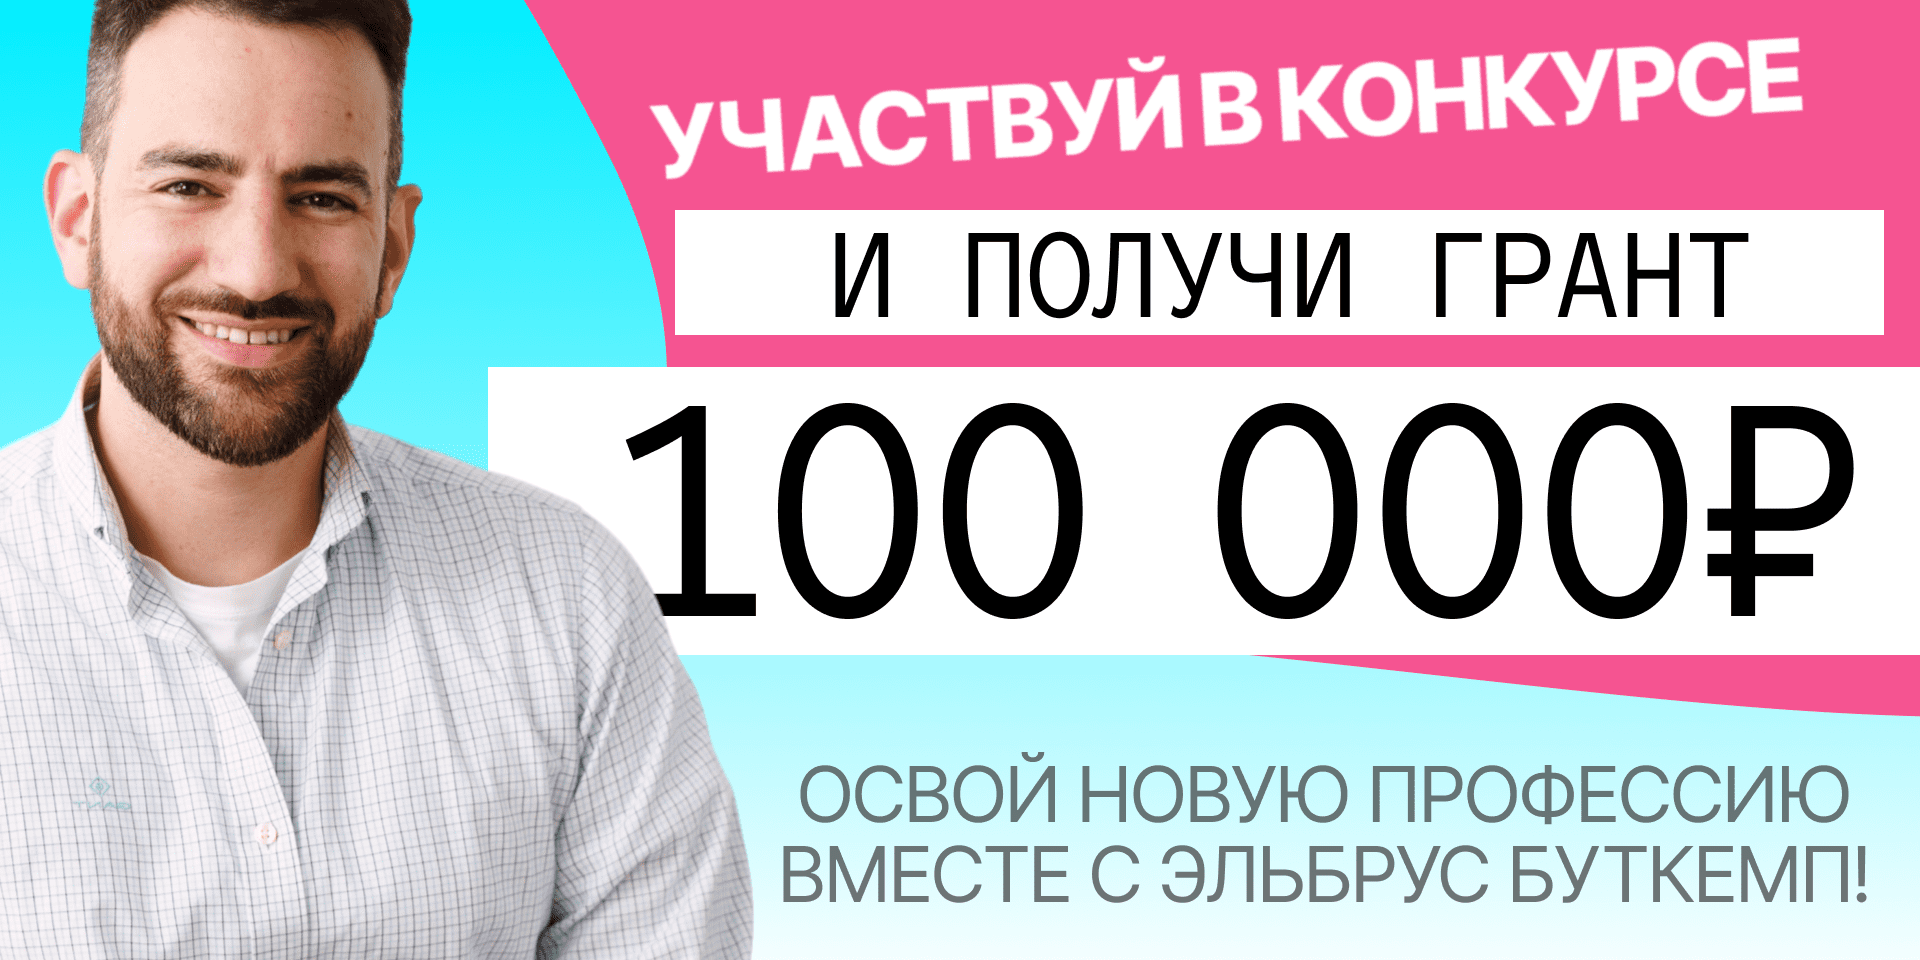 Выиграй грант в 100 000 рублей на обучение от Эльбрус Буткемп